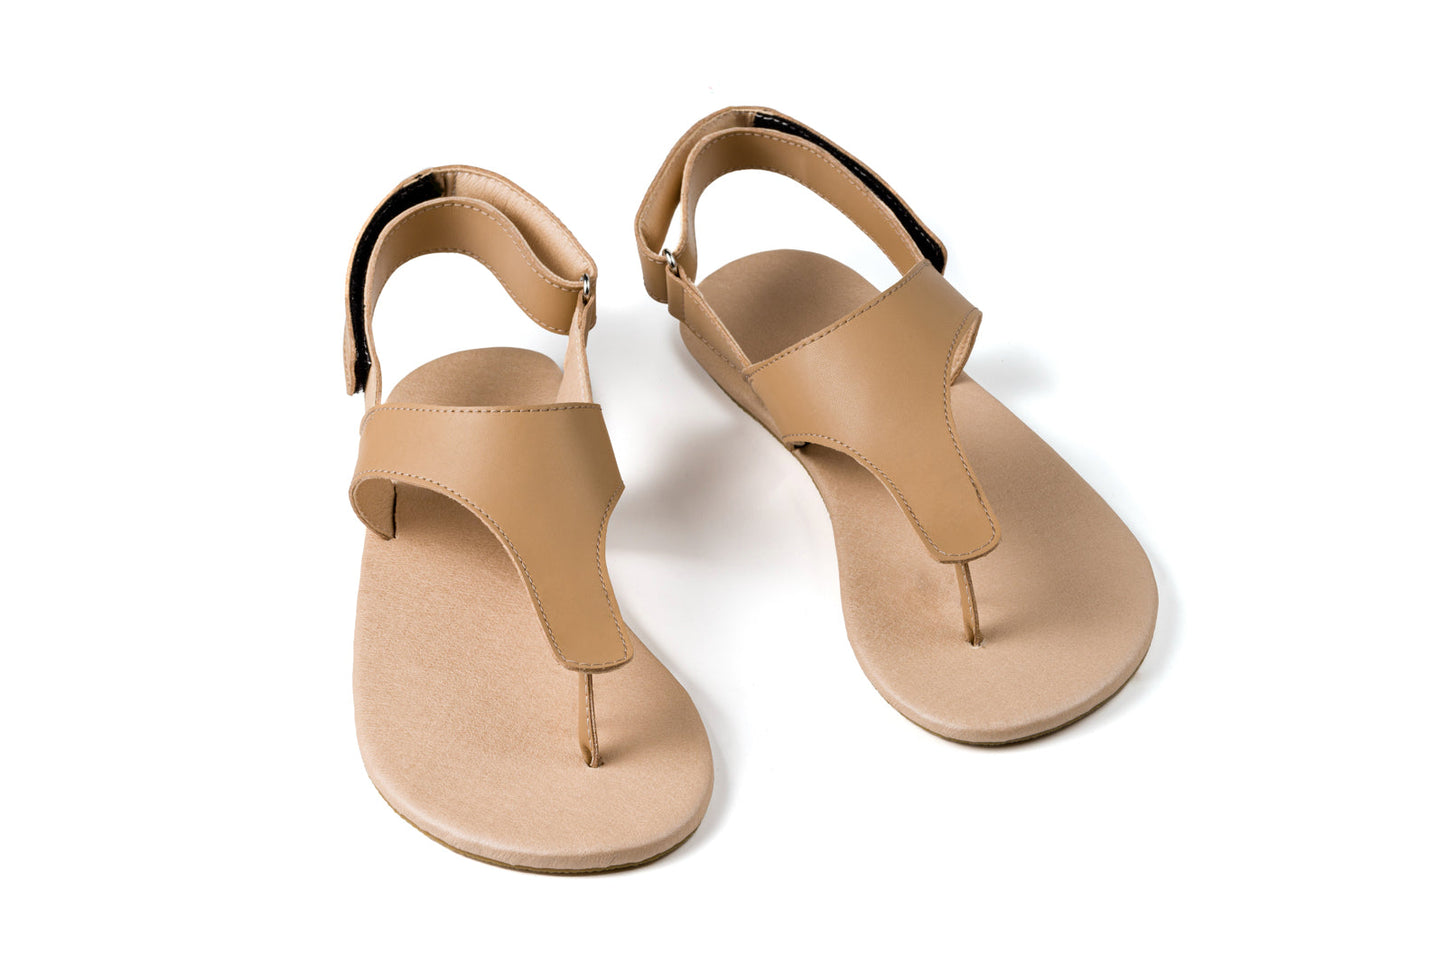 Ahinsa Simple barfods sandaler til kvinder i farven beige, par